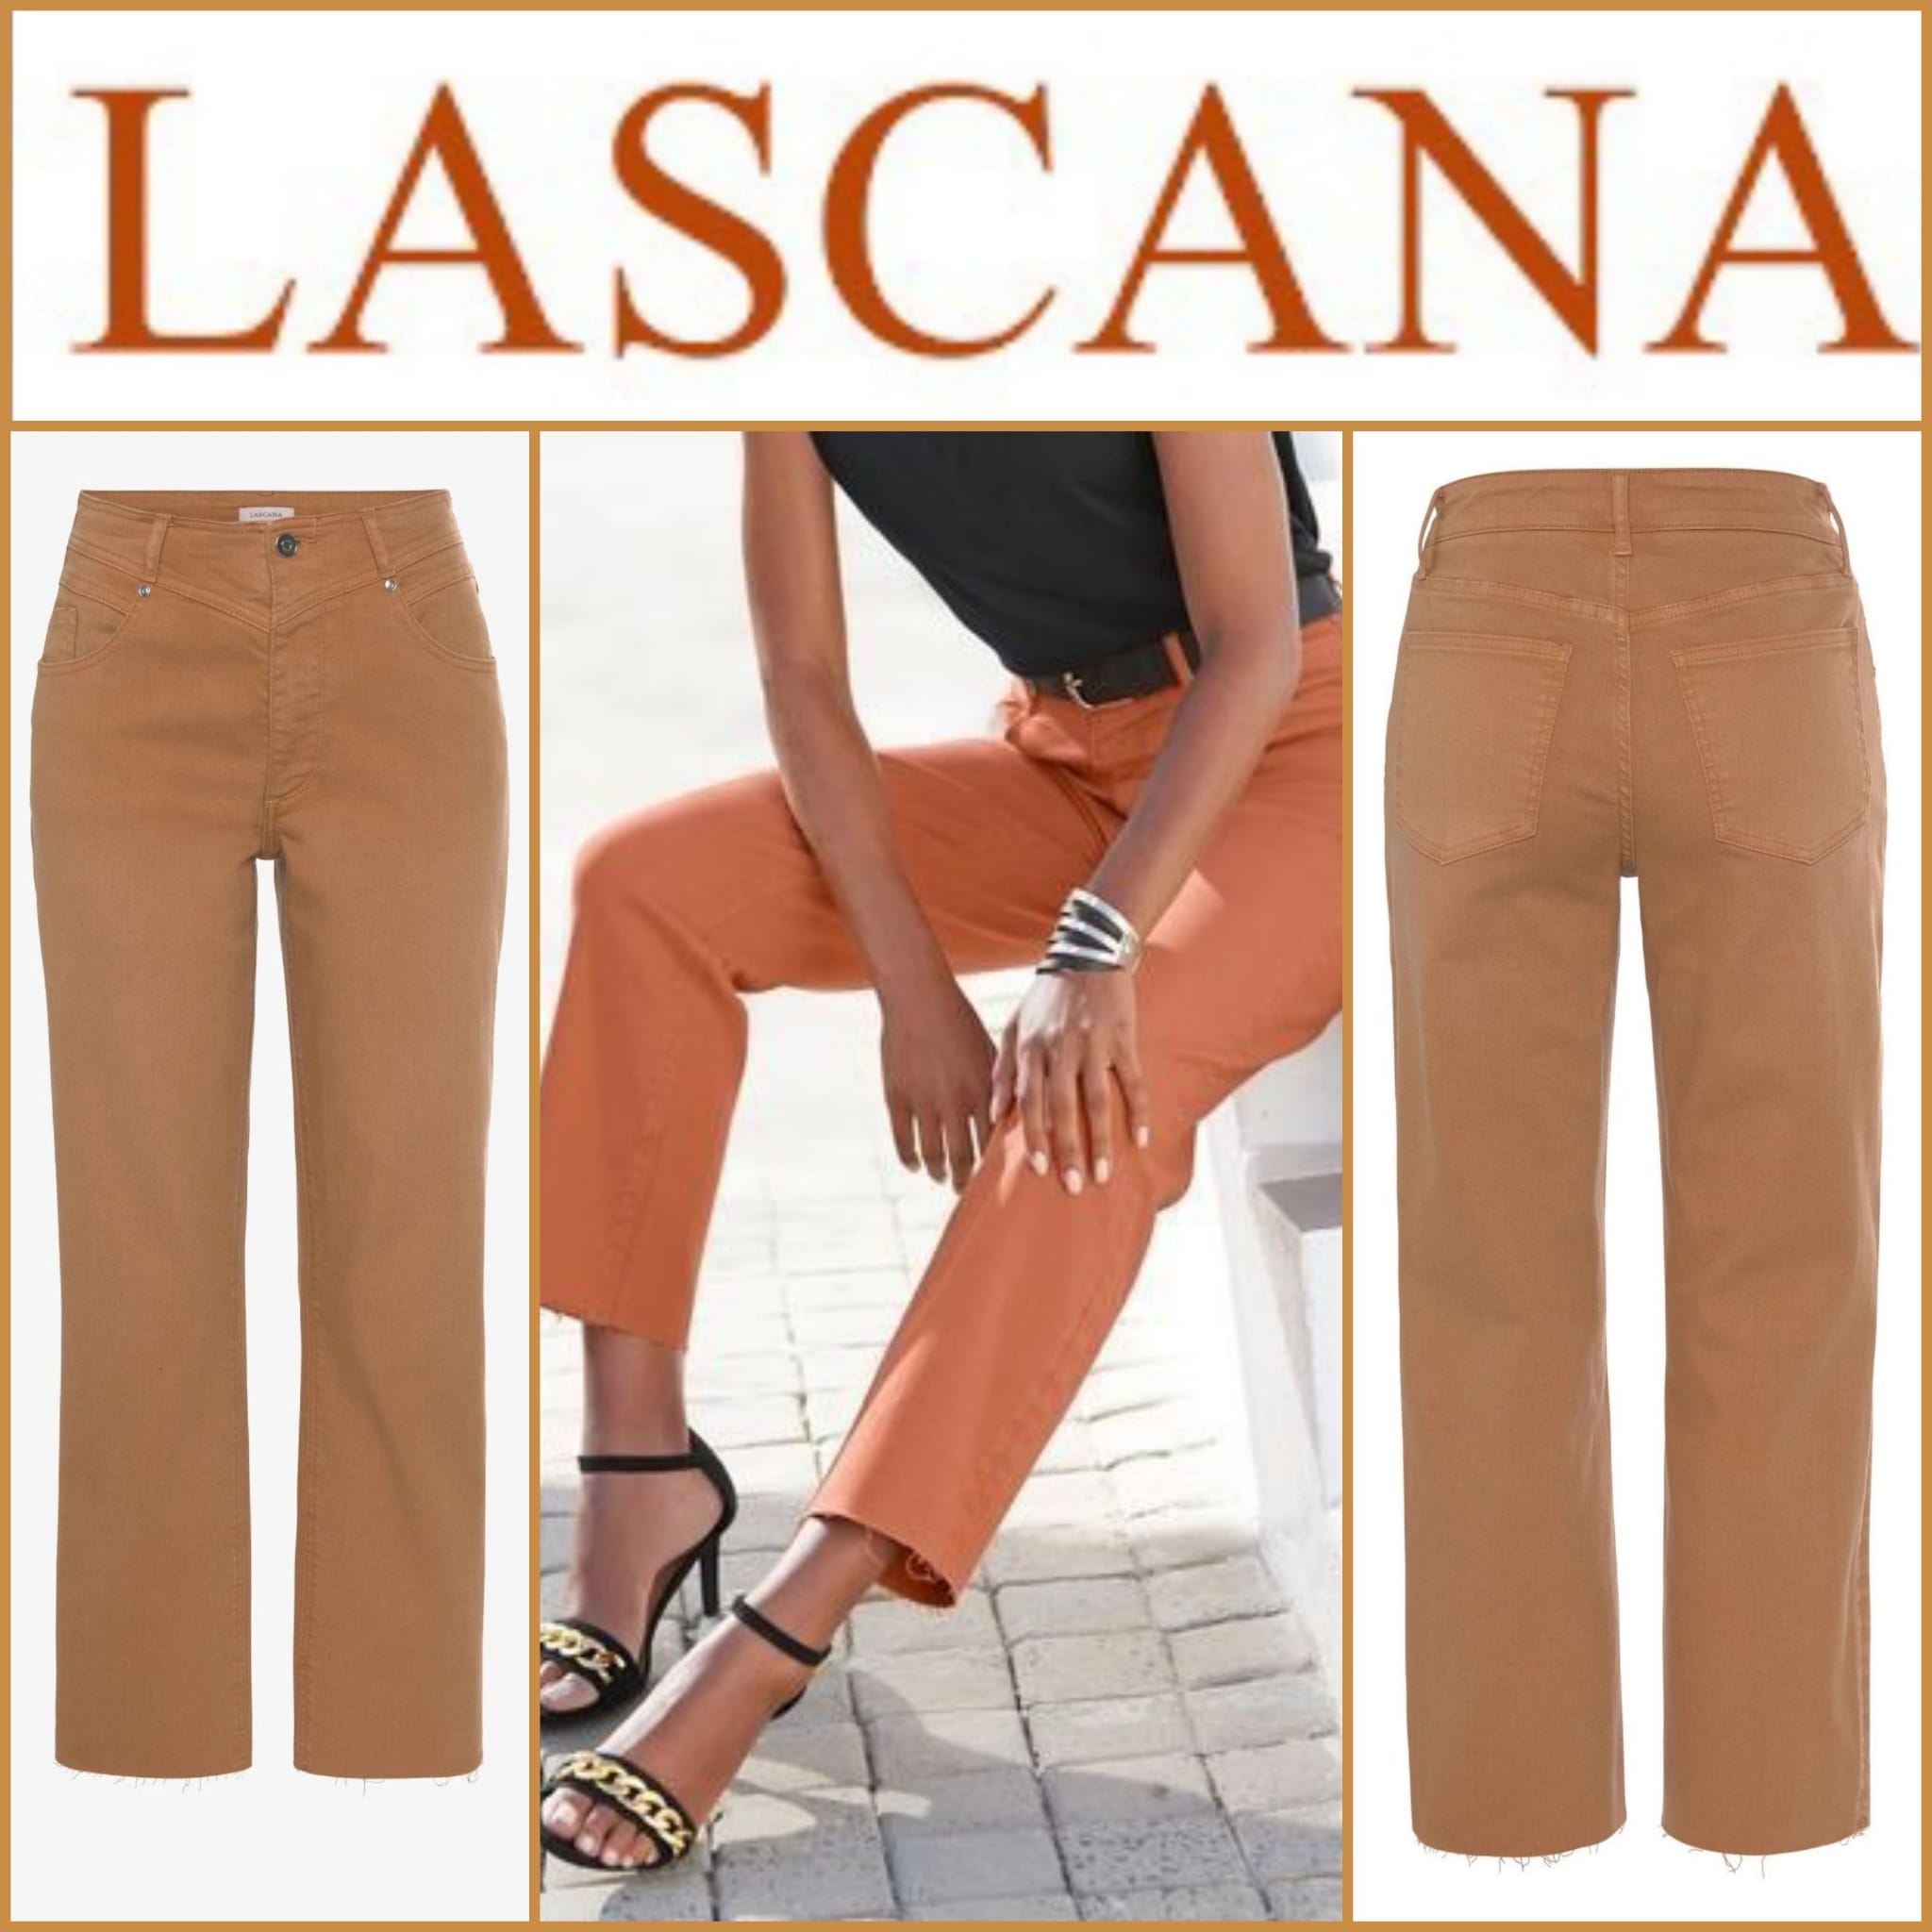 Women's terracotta jeans from Lascana